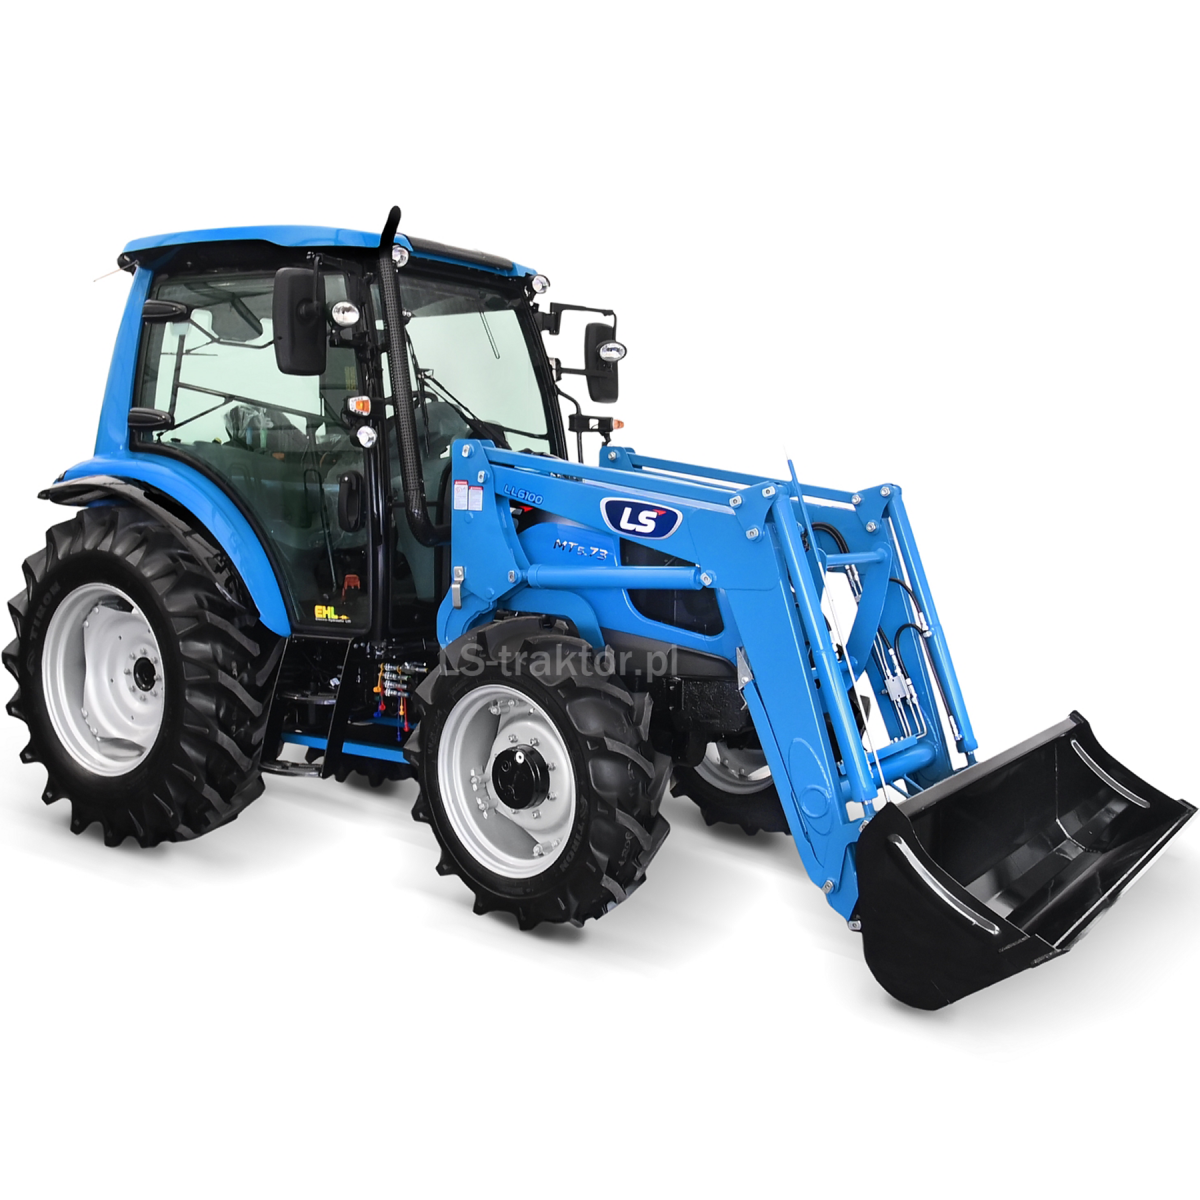 Tractor LS MT5.73 PST 4x4 - 73 CV / CAB / EHL + Cargador frontal LS LL6100